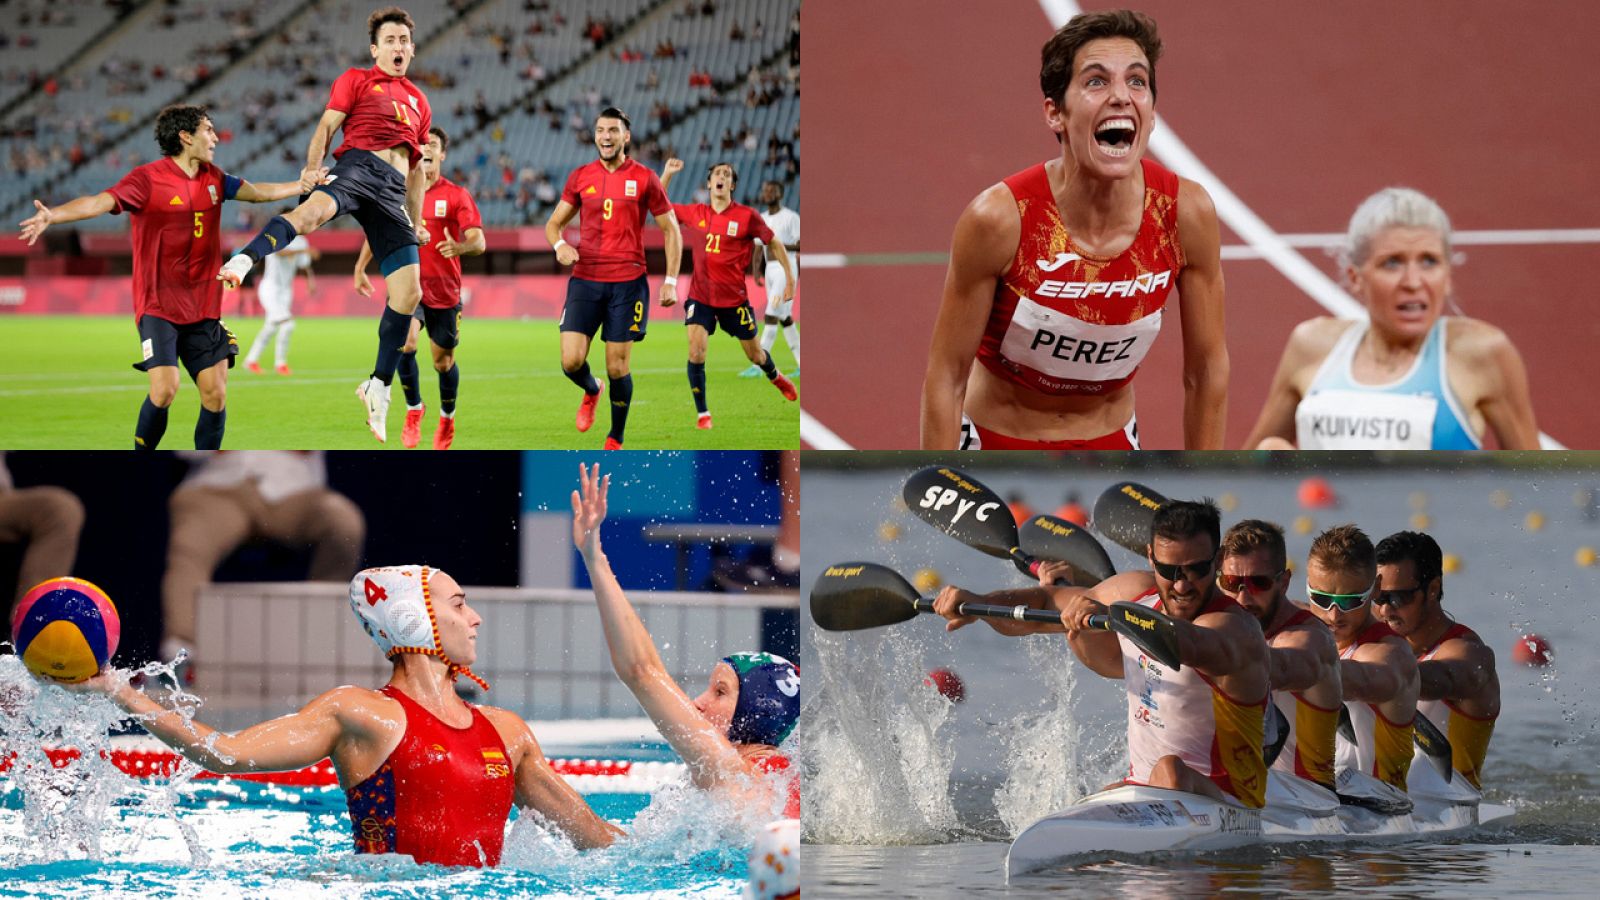 fútbol, atletismo, waterpolo y piragüismo español